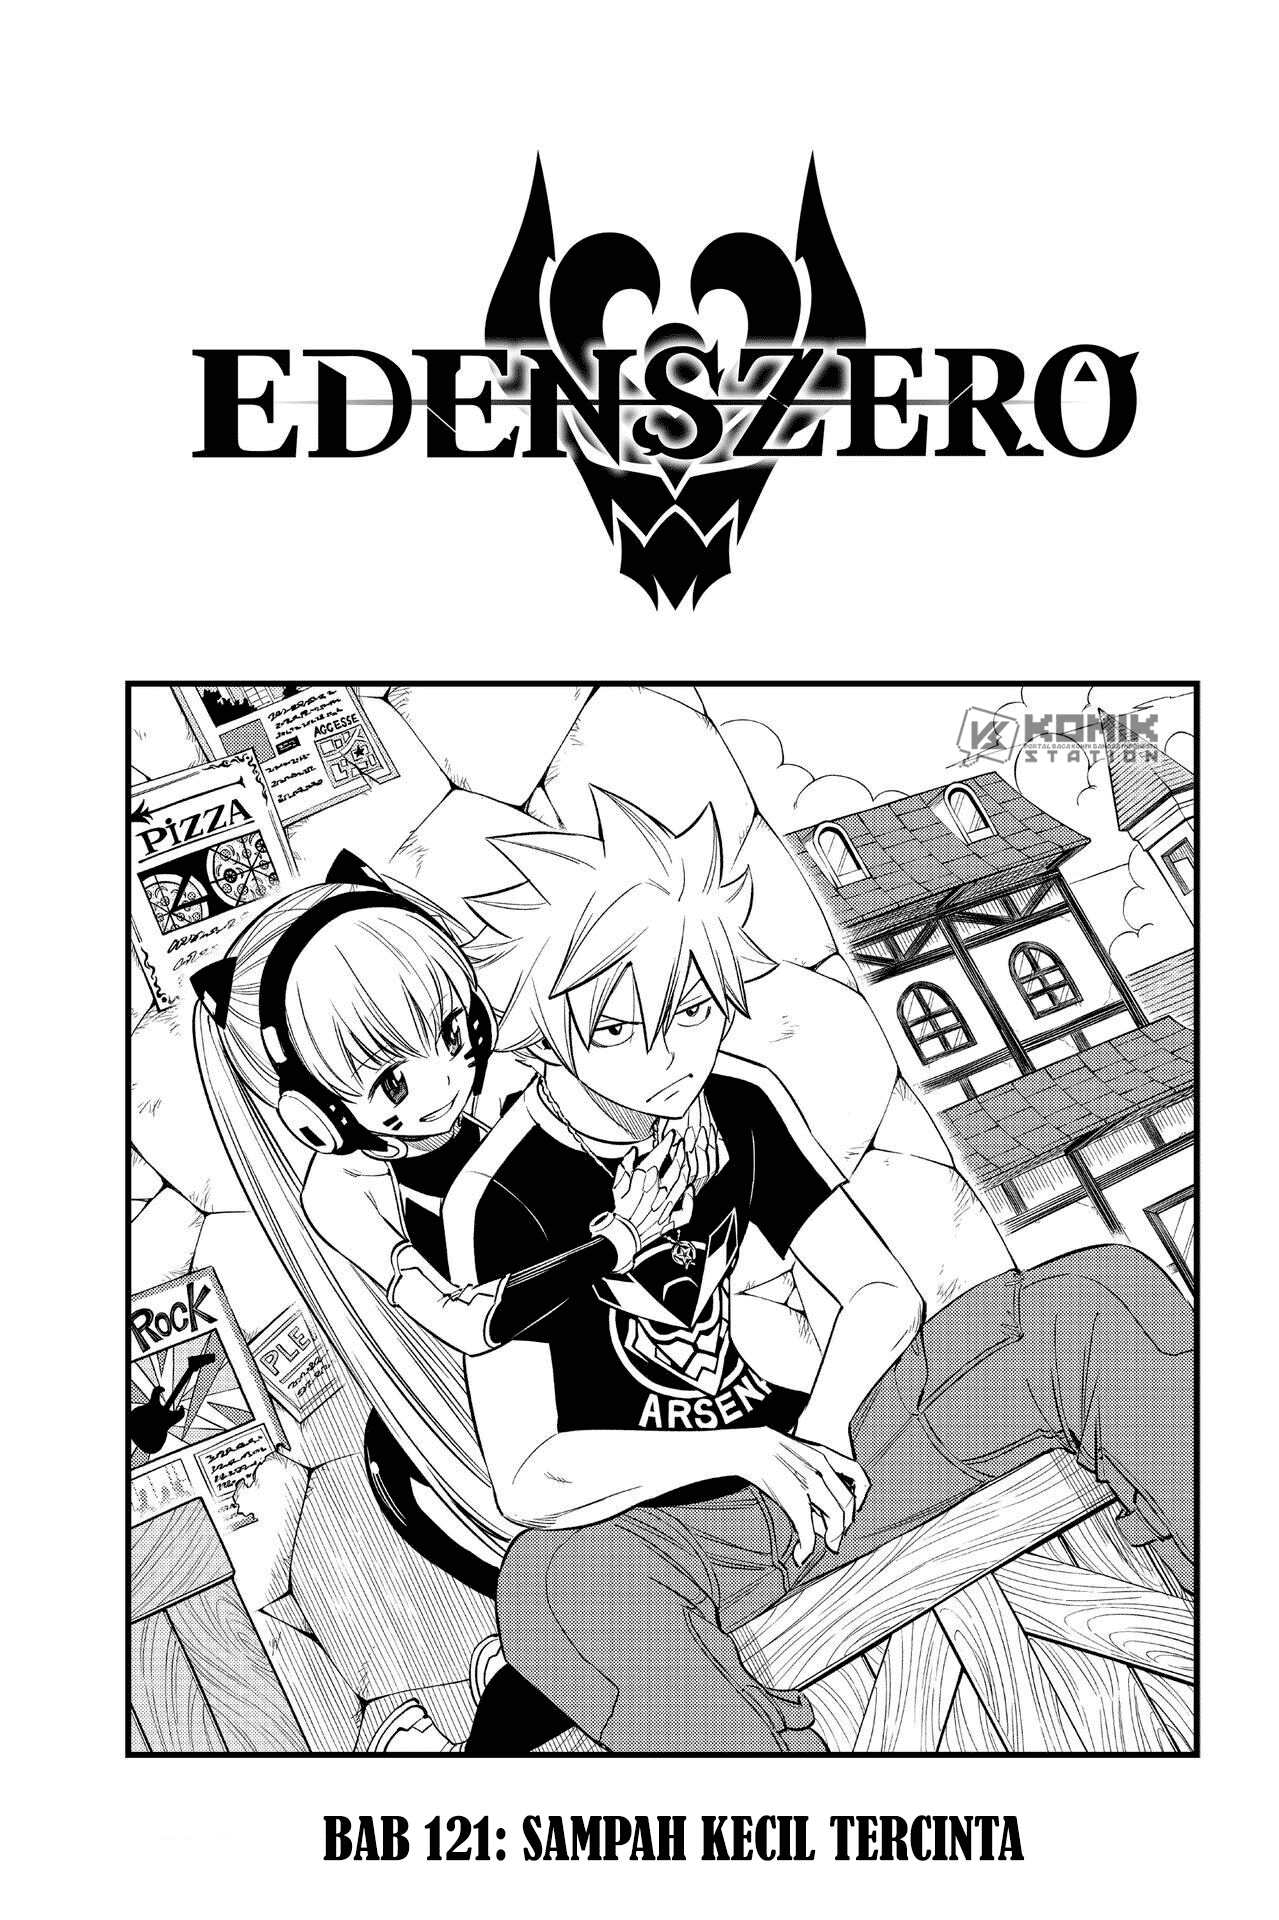 Eden’s Zero Chapter 121